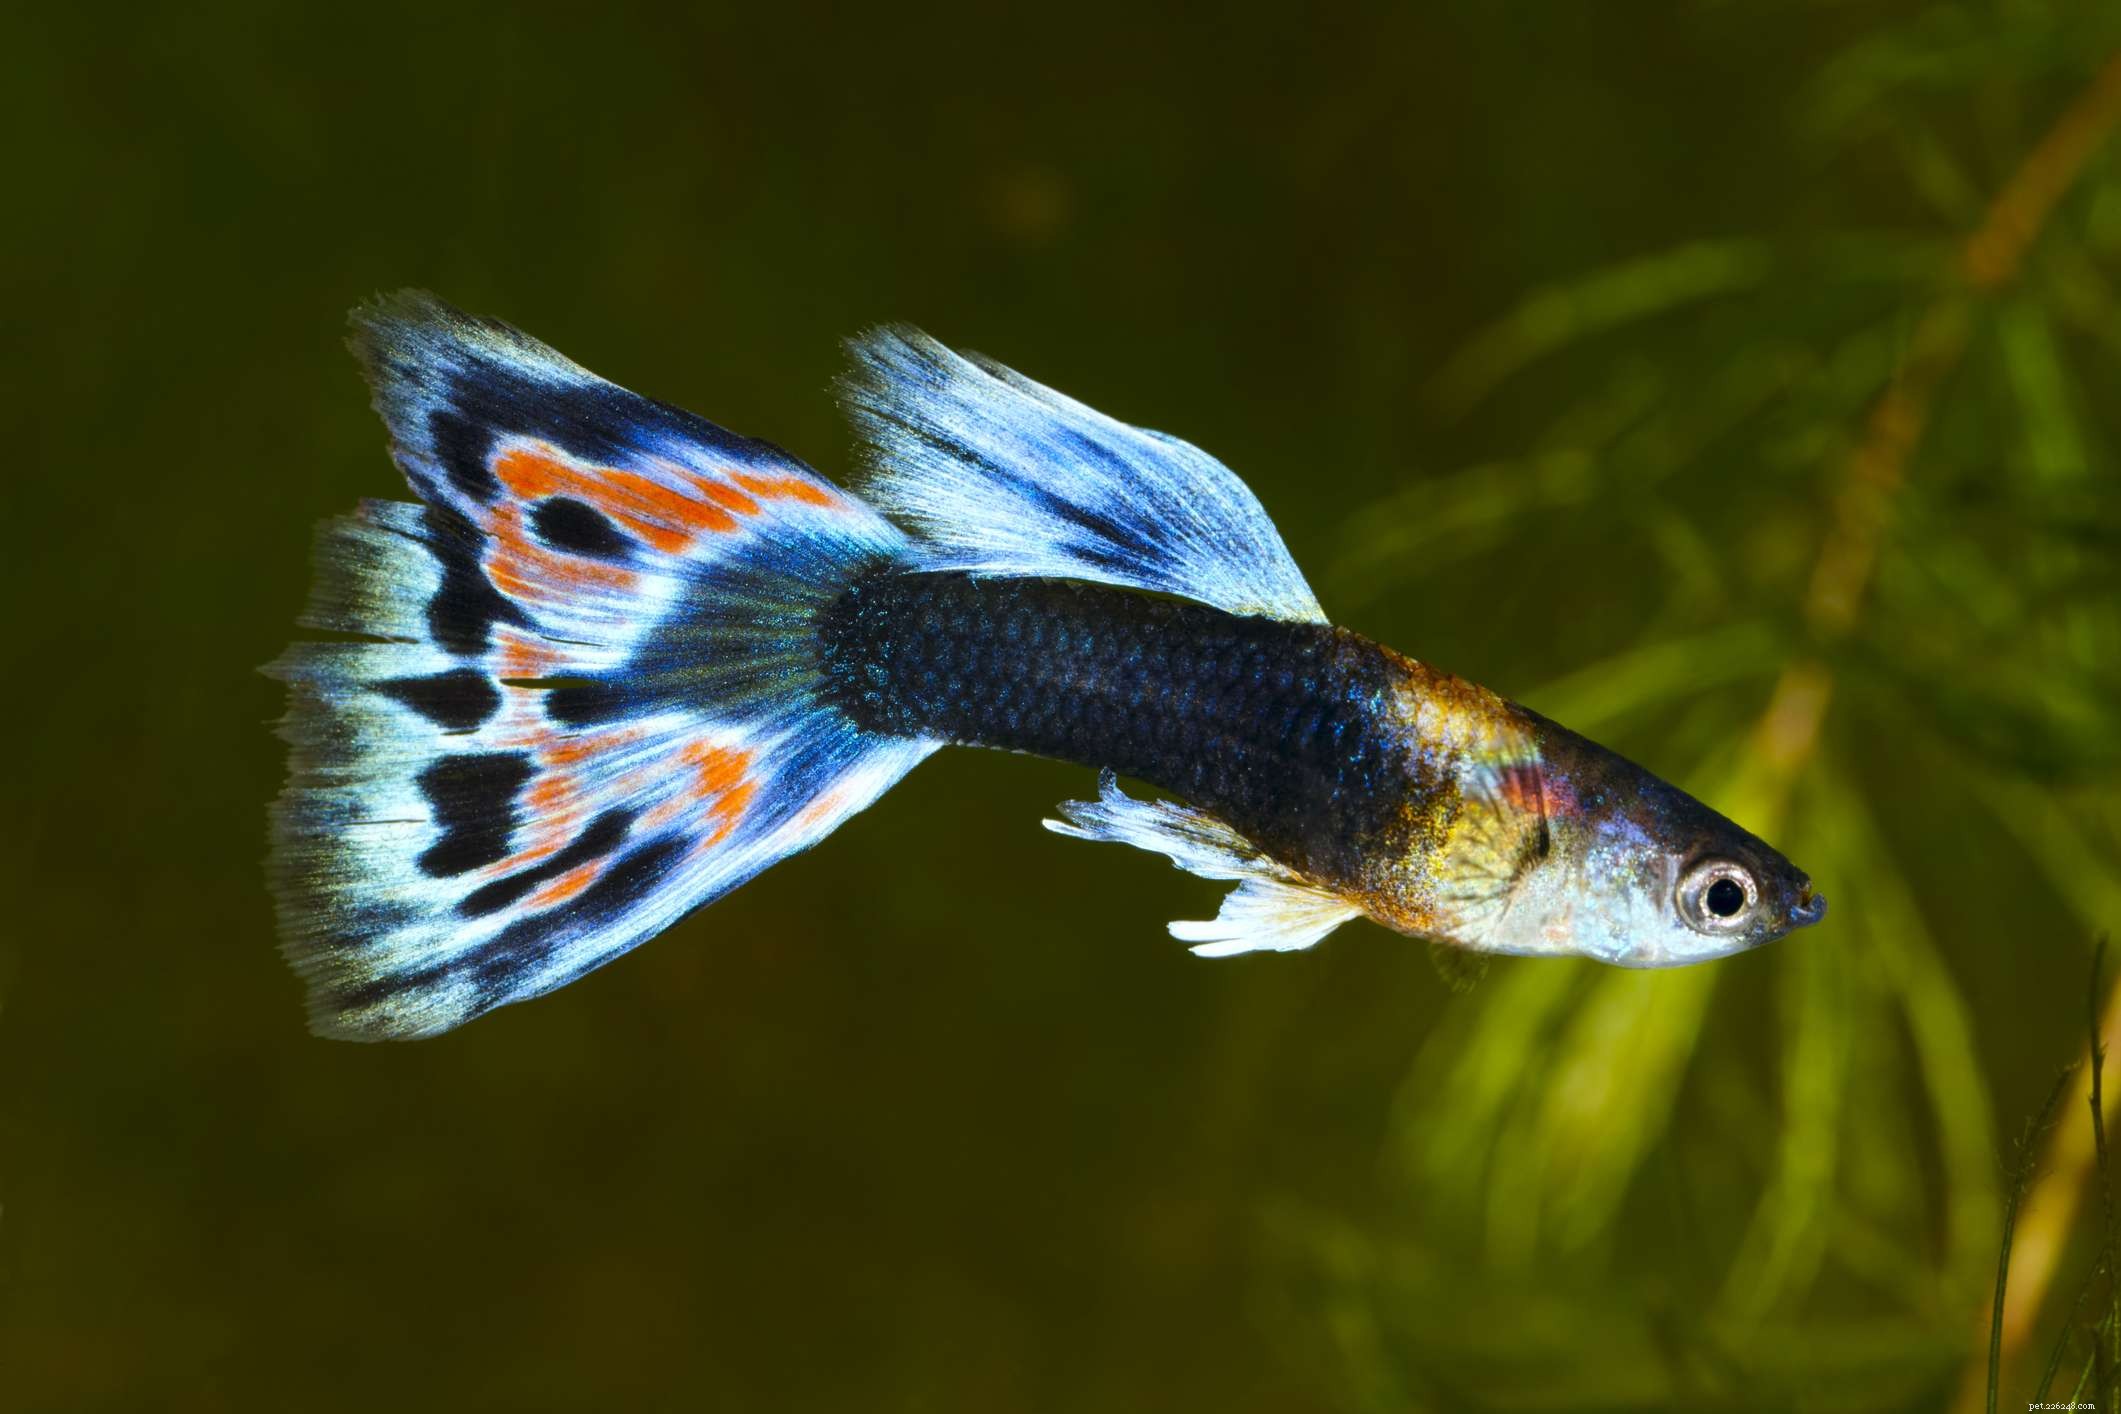 Quais espécies de peixes de água doce são melhores para tanques aquecidos?